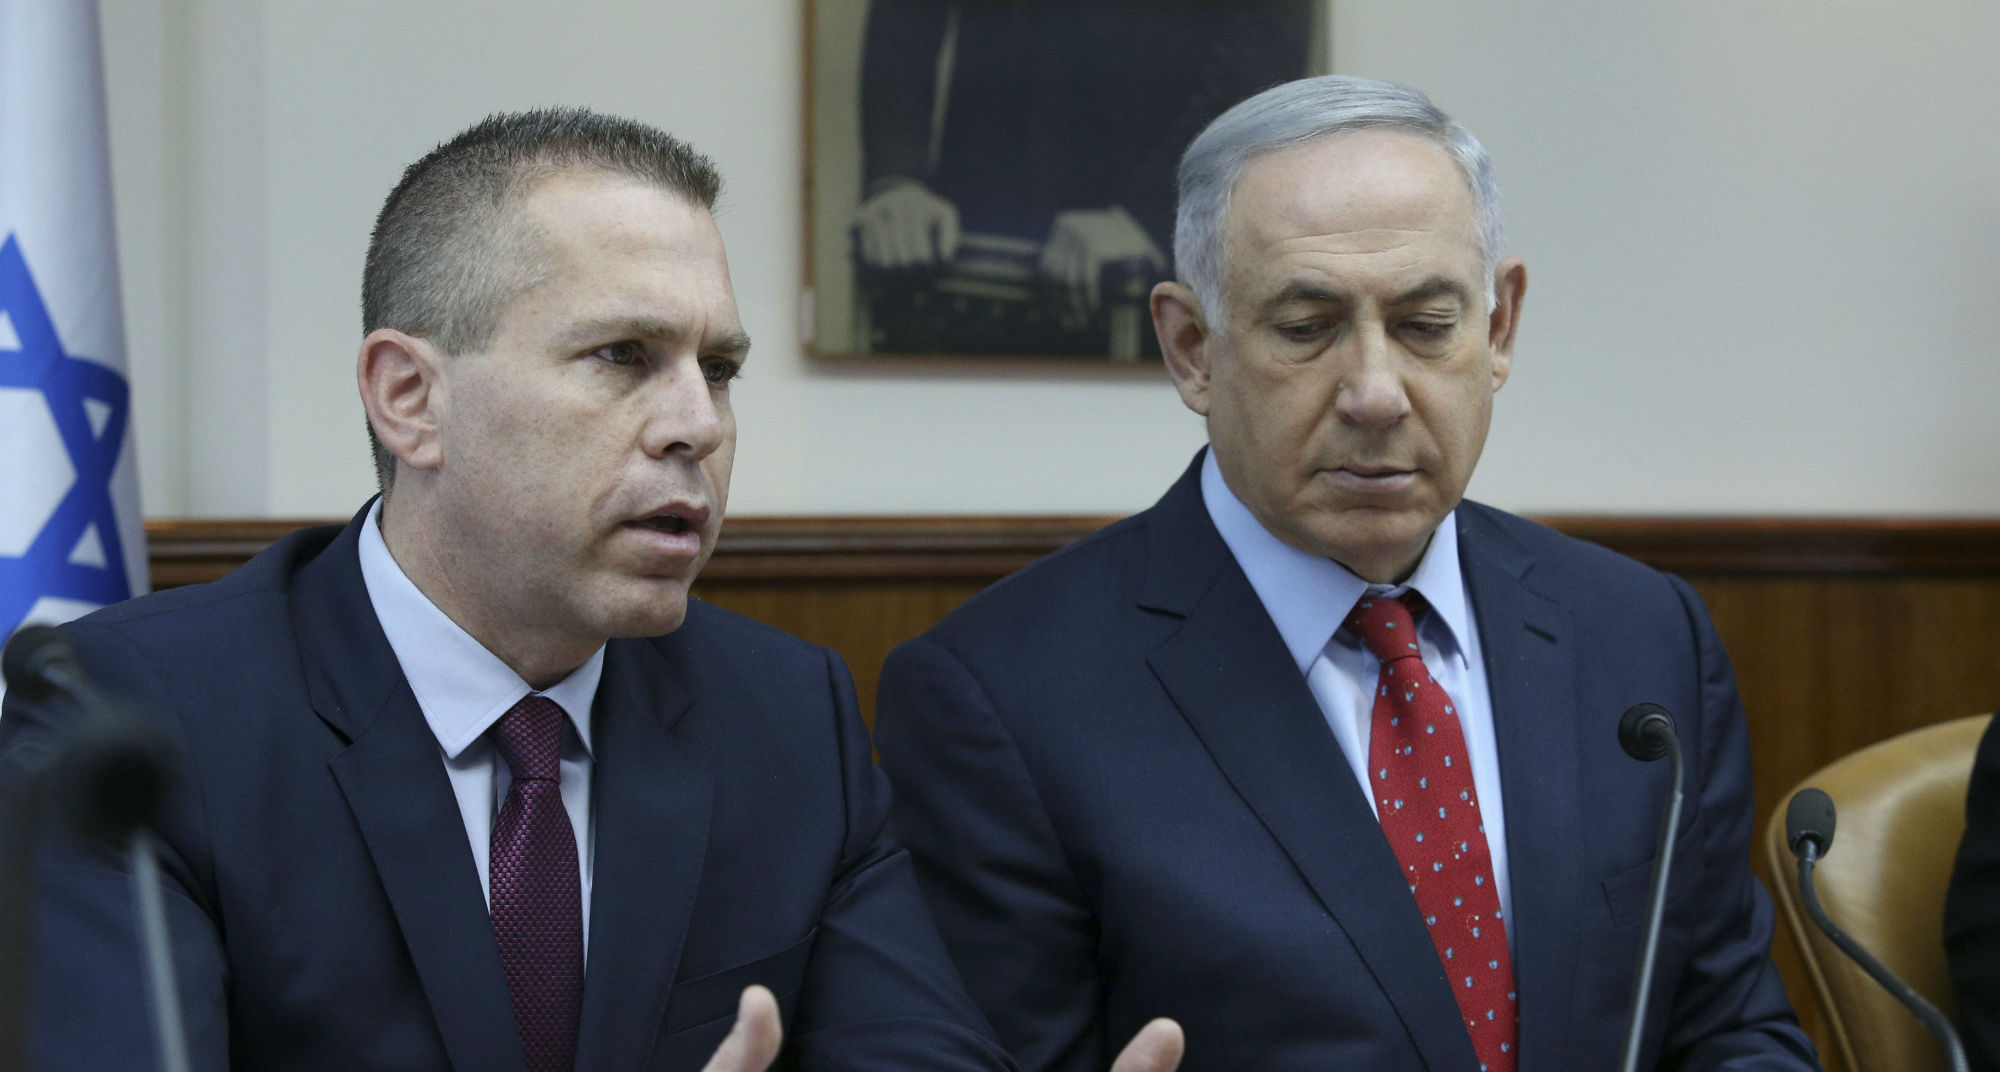 Le ministre israélien de la Sécurité, Gilad Erdan, et le premier ministre Benjamin Netanyahu